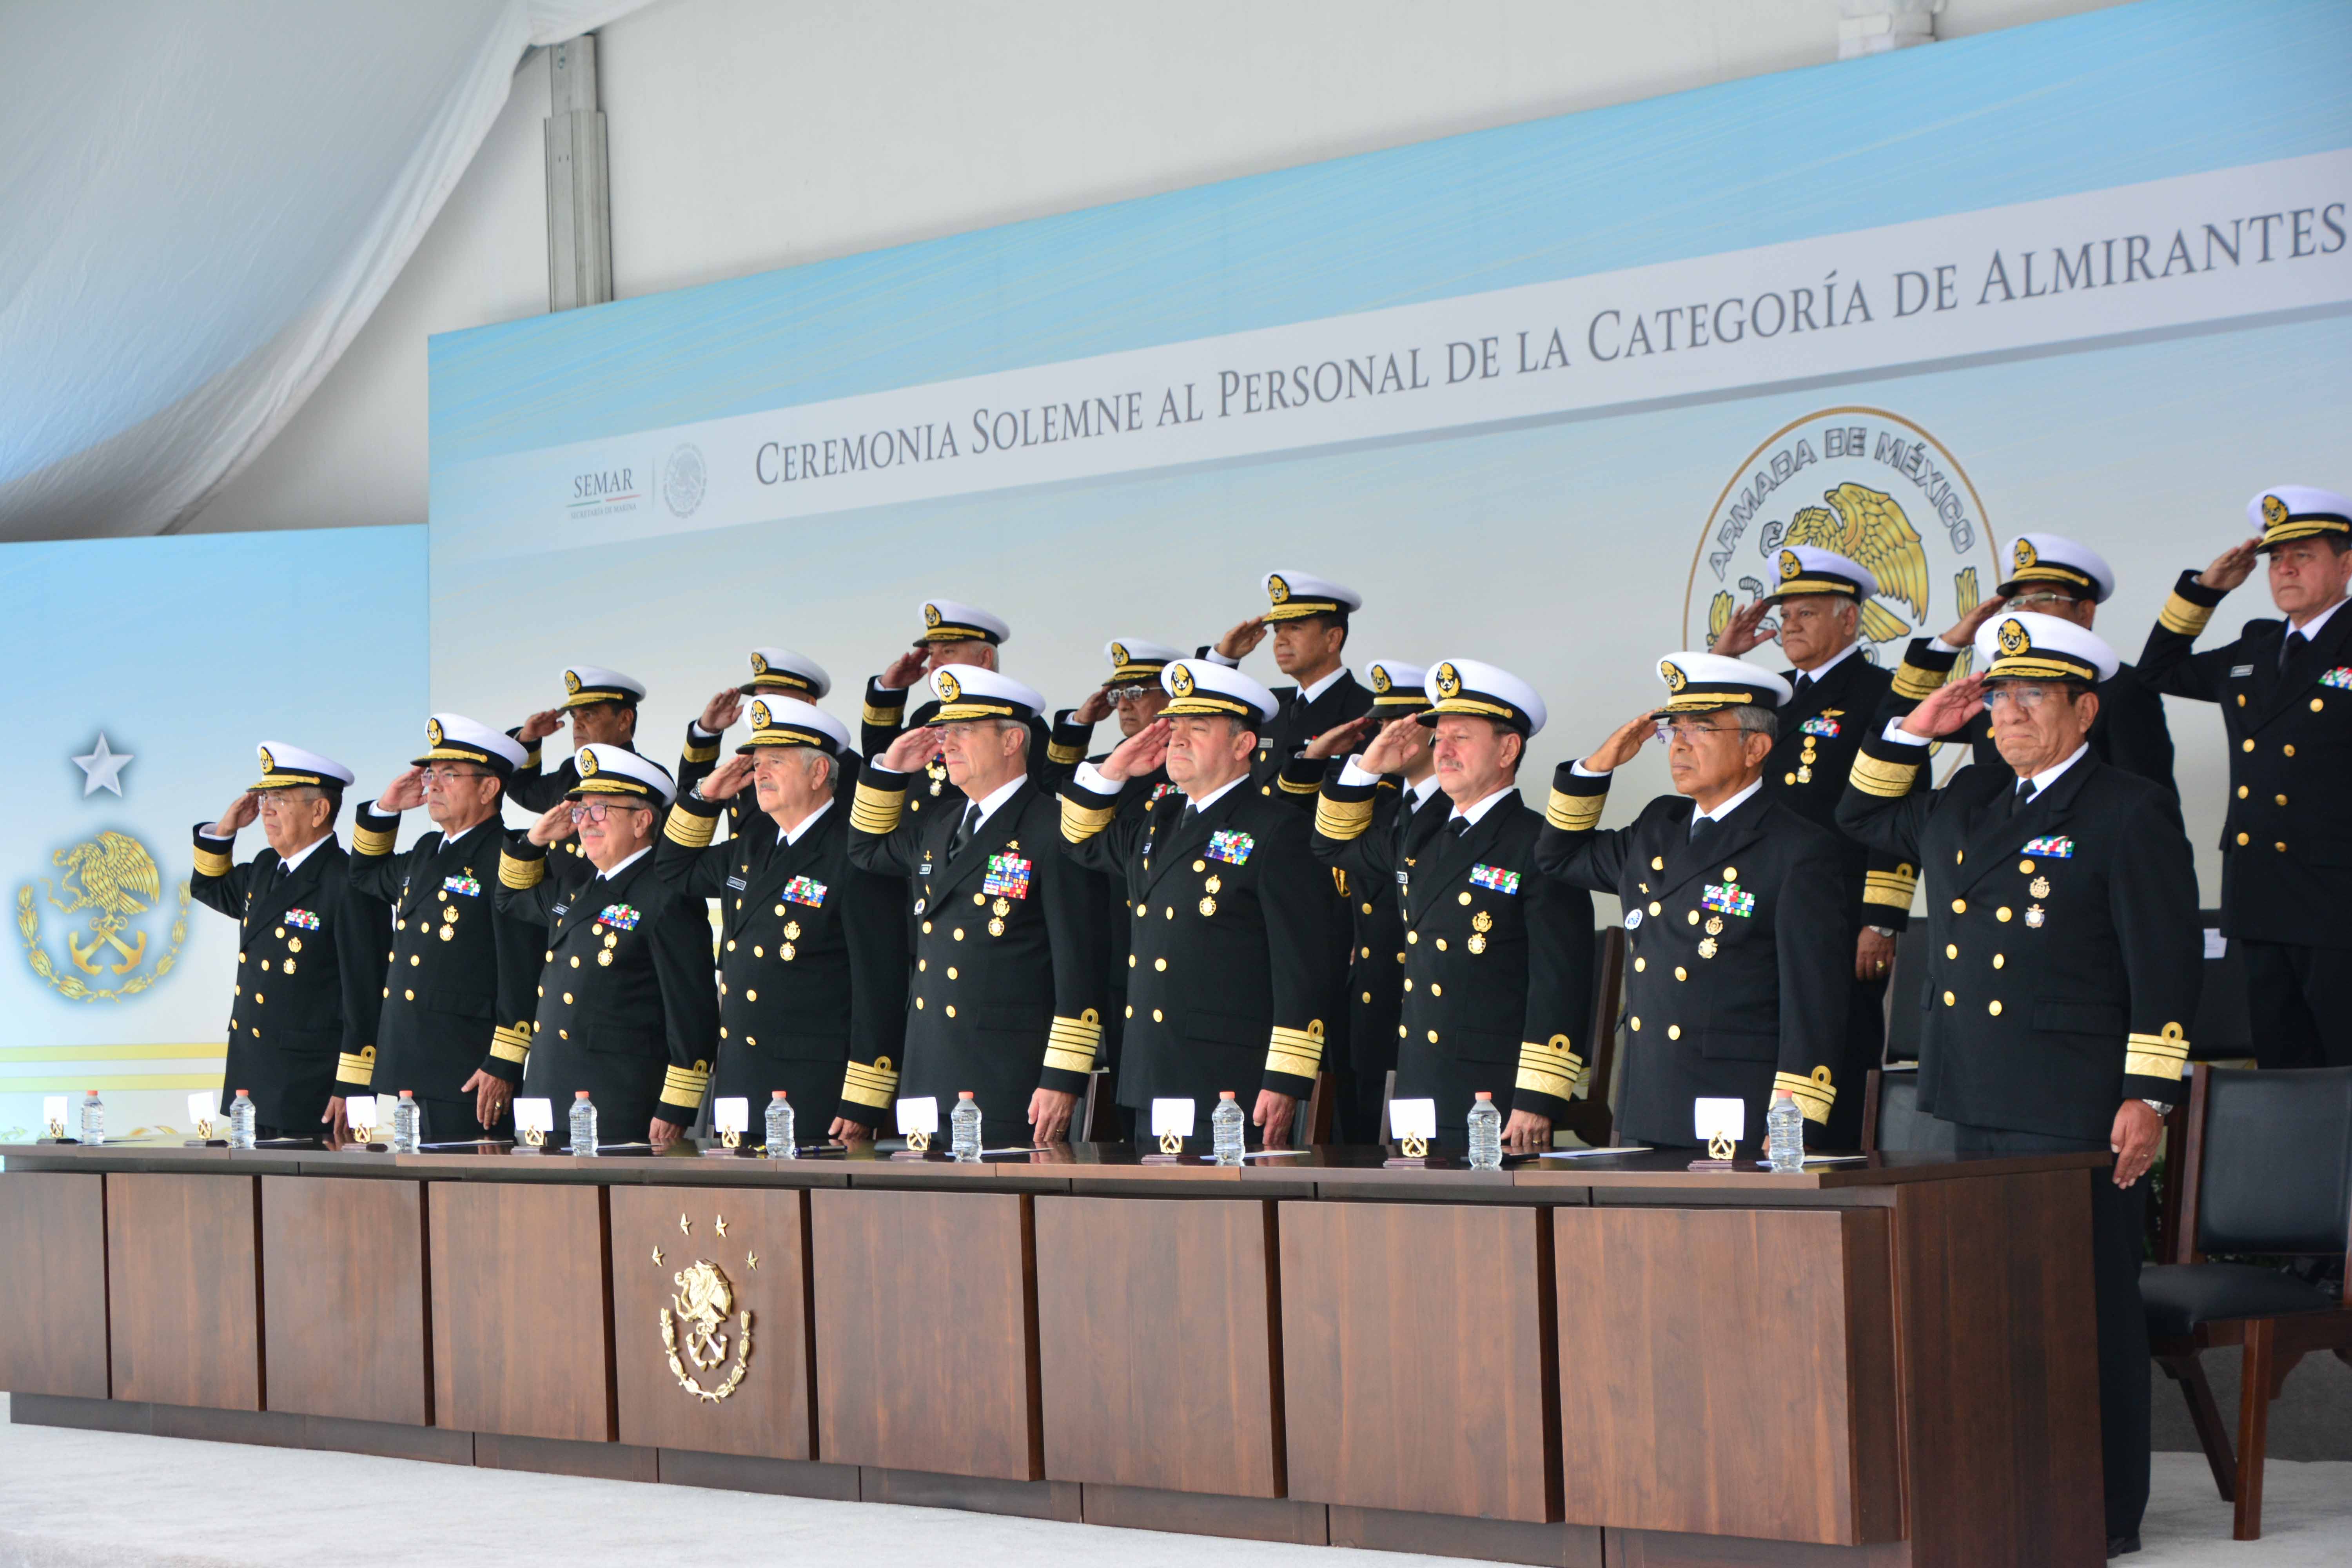 Ceremonia Solemne al personal de la categoría de Almirantes que pasa a situación de retiro 